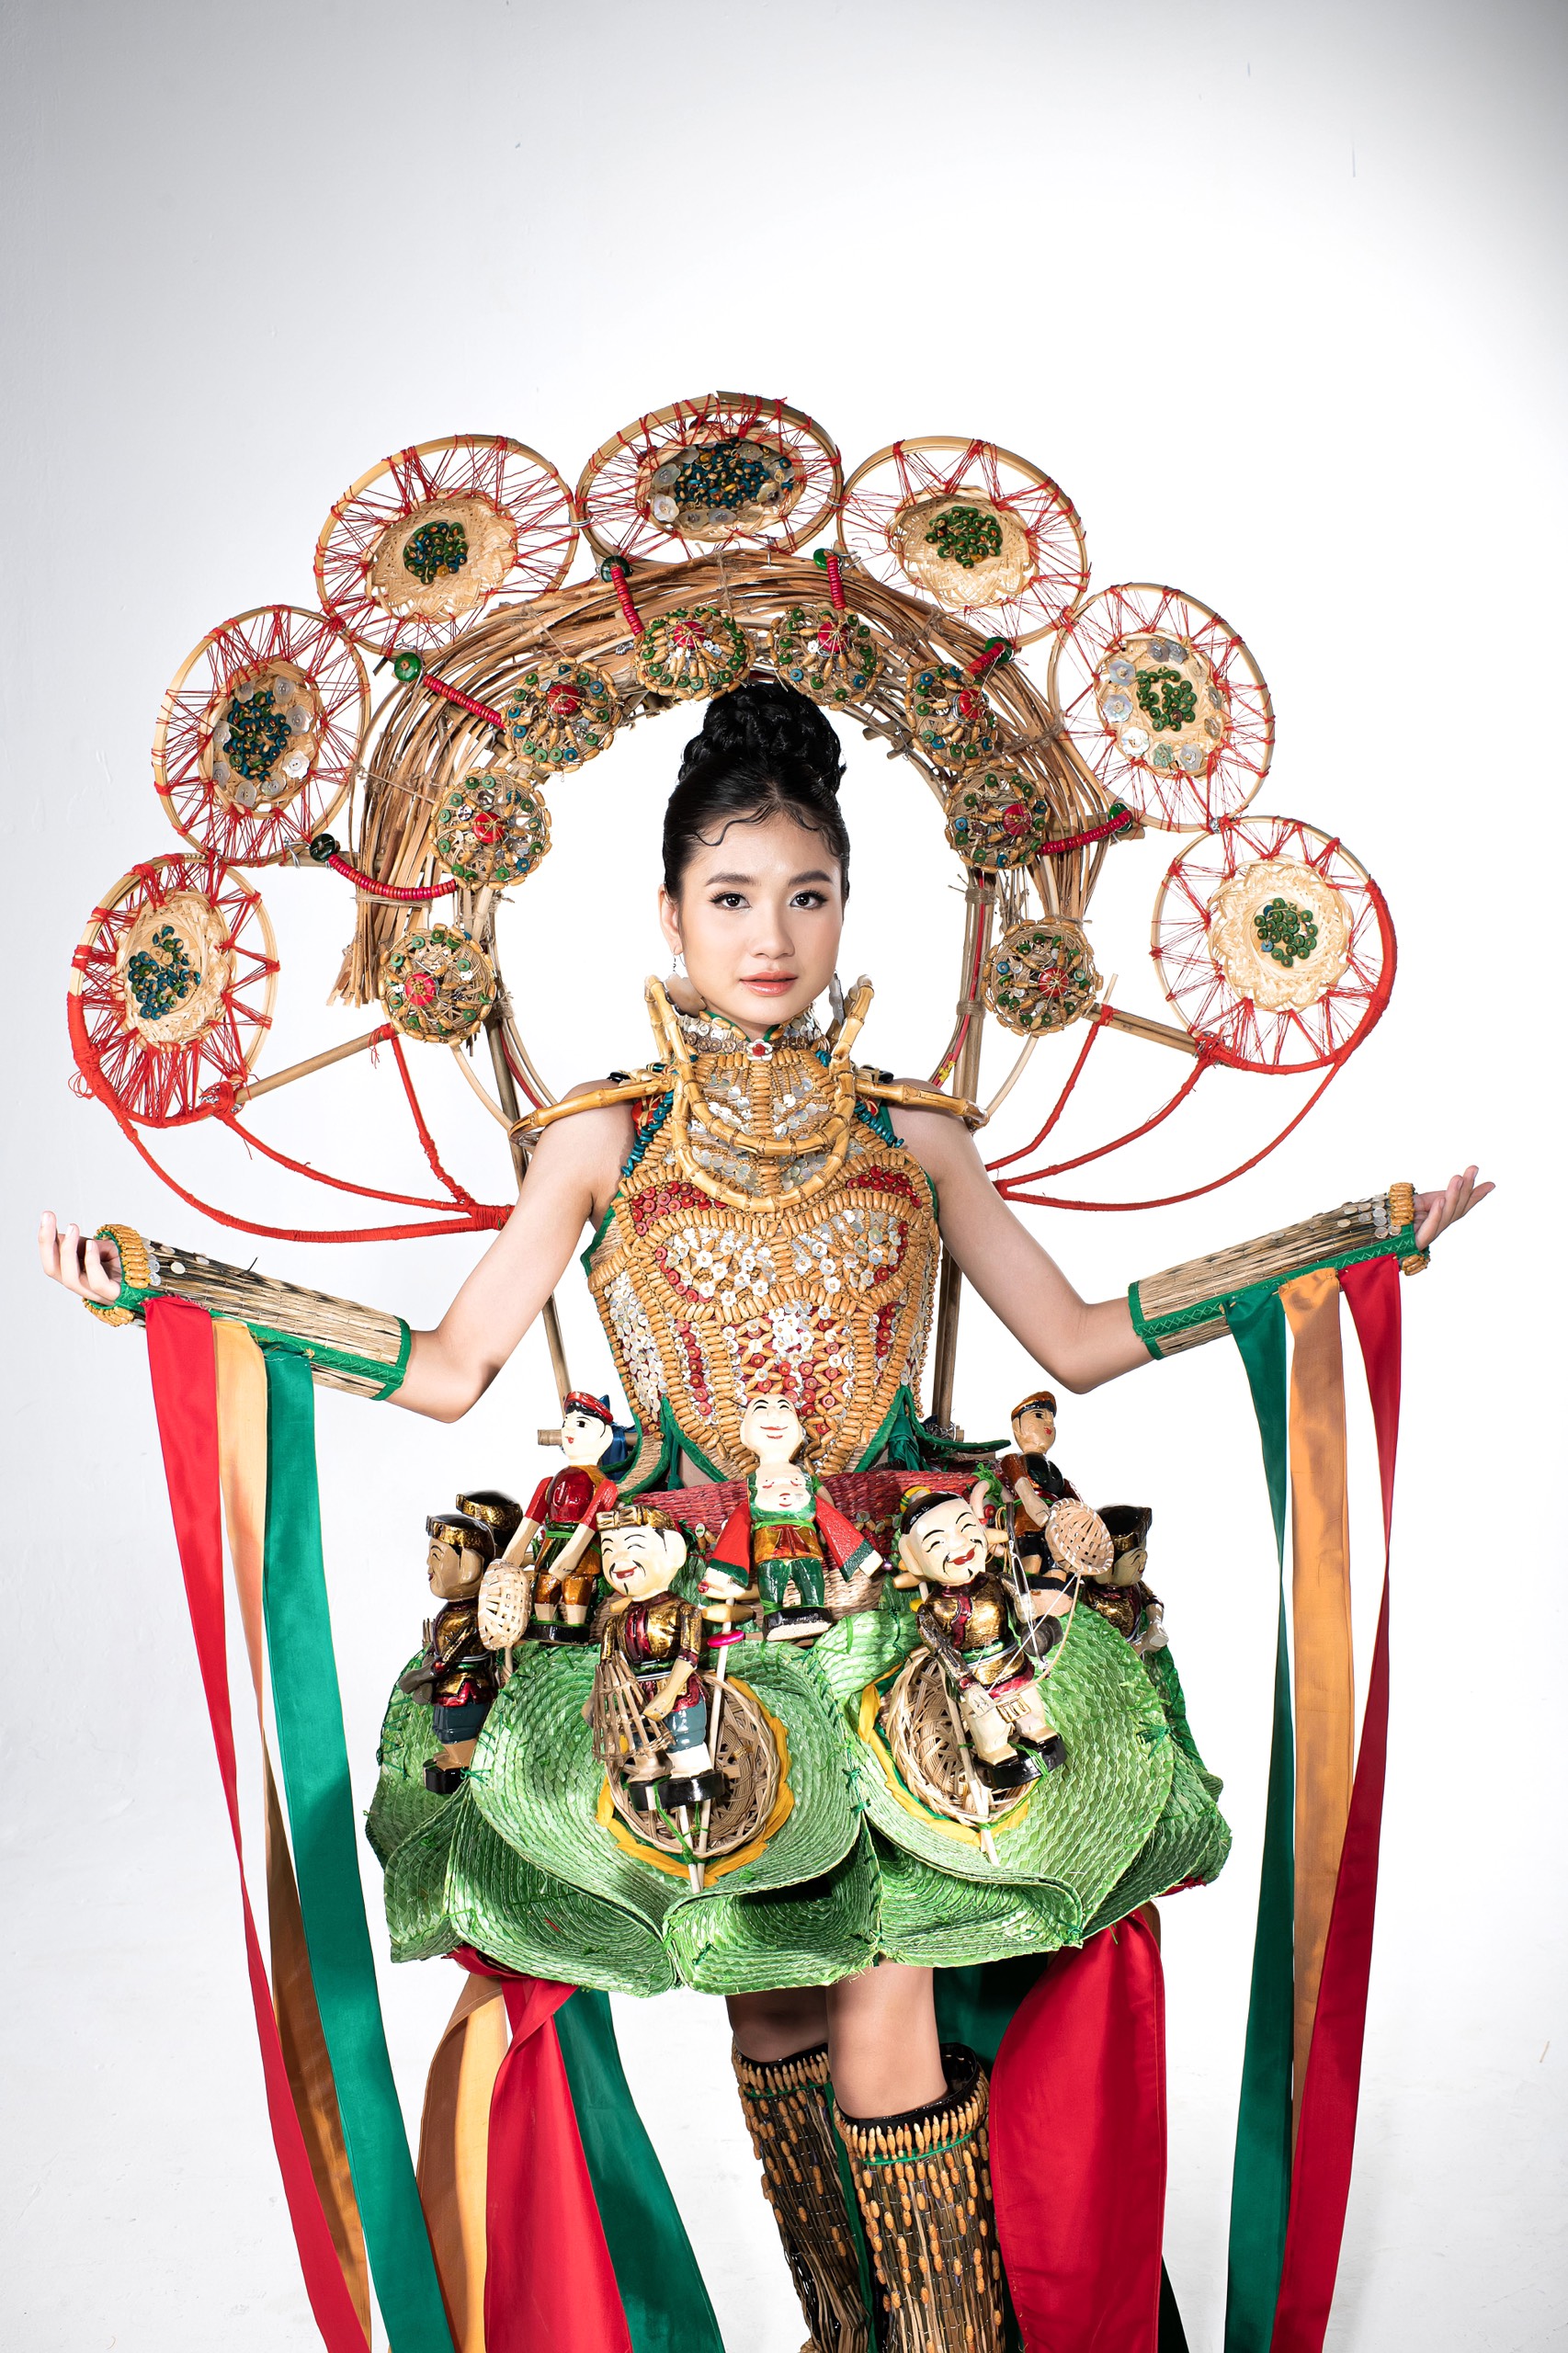 Với “Hồn nước”, đương kim Hoa hậu Môi trường Việt Nam 2022 muốn truyền tải thông điệp về vẻ đẹp đầy sức sống của nước, sự thịnh vượng của văn hóa Việt từ ngàn xưa bắt đầu từ sự dồi dào nguồn nước trong nông nghiệp, trên đồng lúa, trên cả sân khấu nghệ thuật.